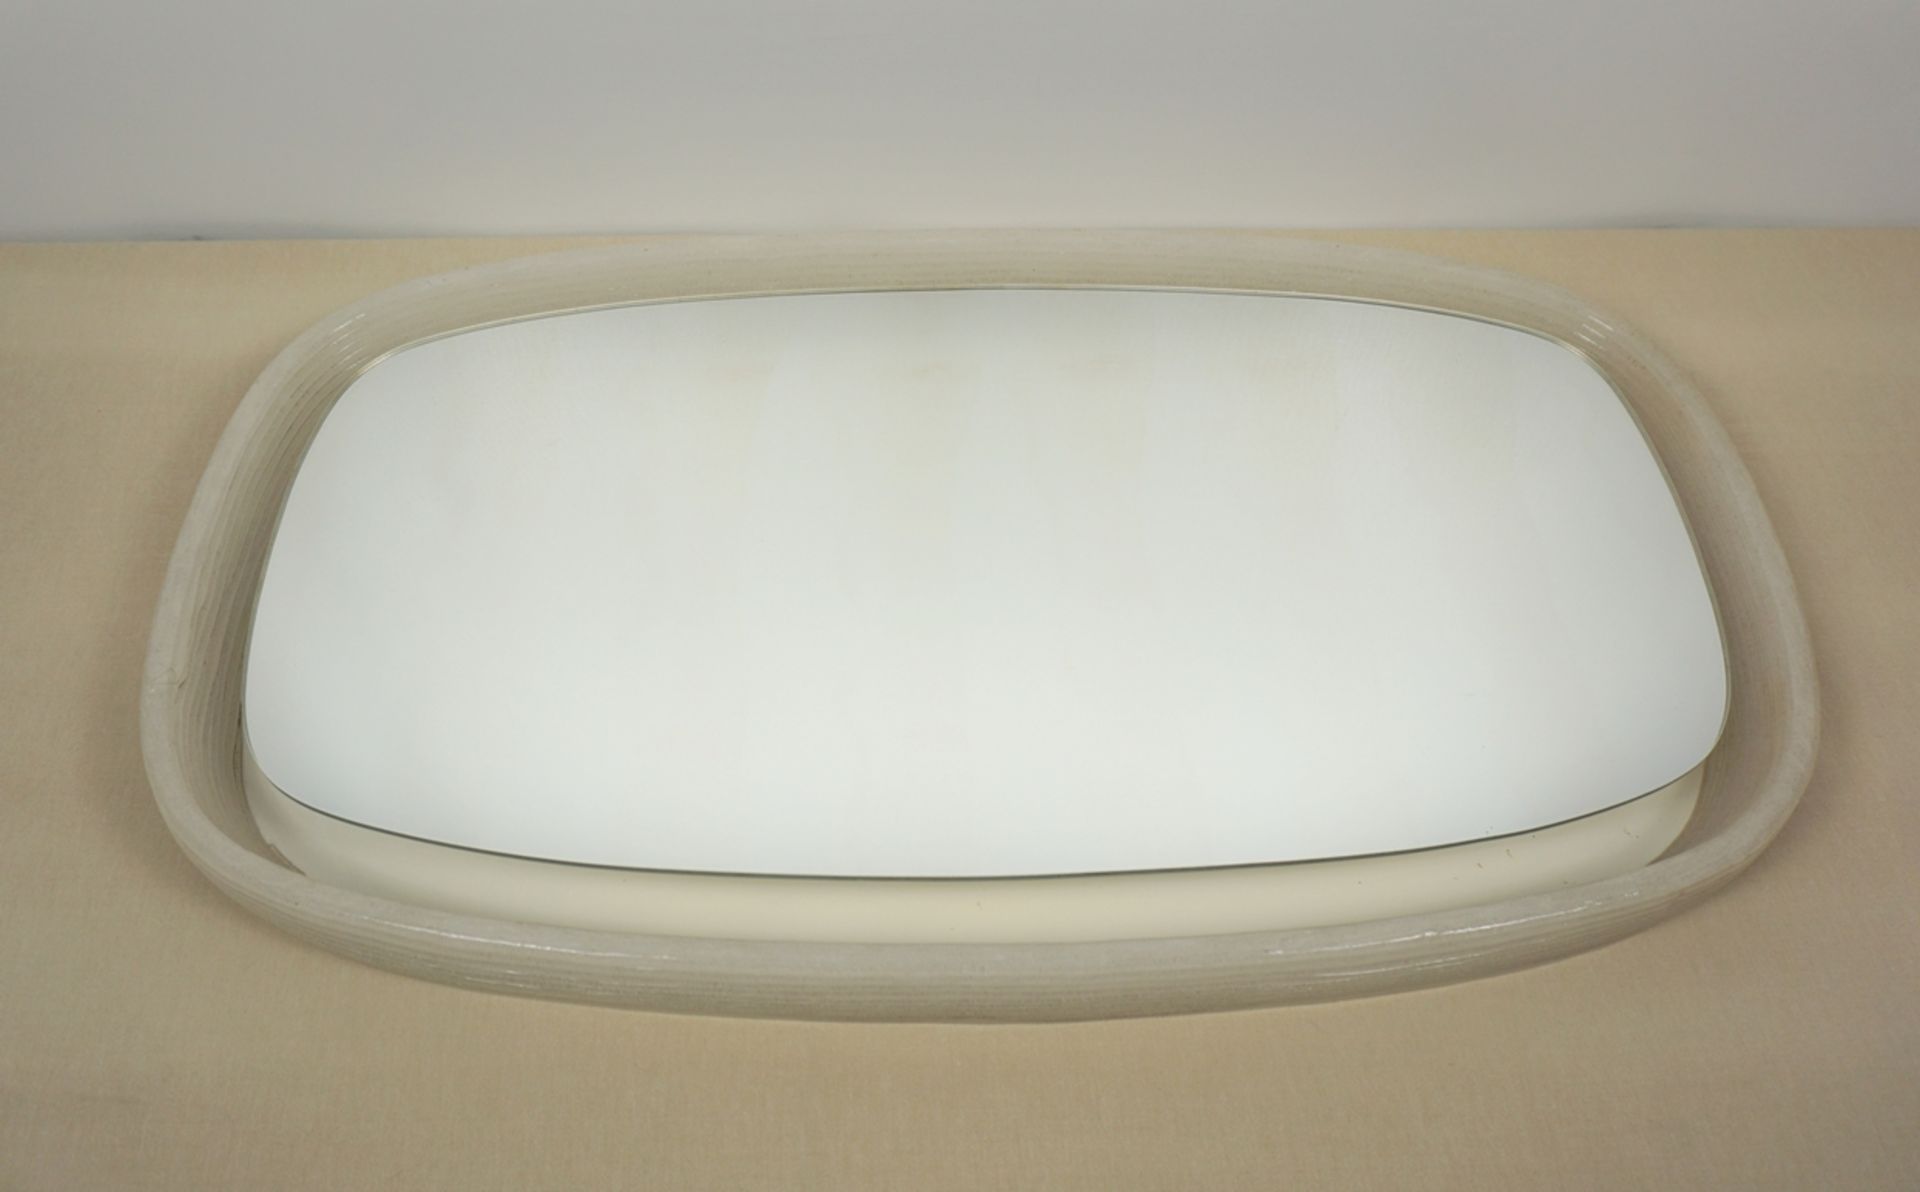 beleuchteter Spiegel in Eisglasoptik, Acryl, Egon Hillebrand, 1960/1970er Jahre - Bild 2 aus 2